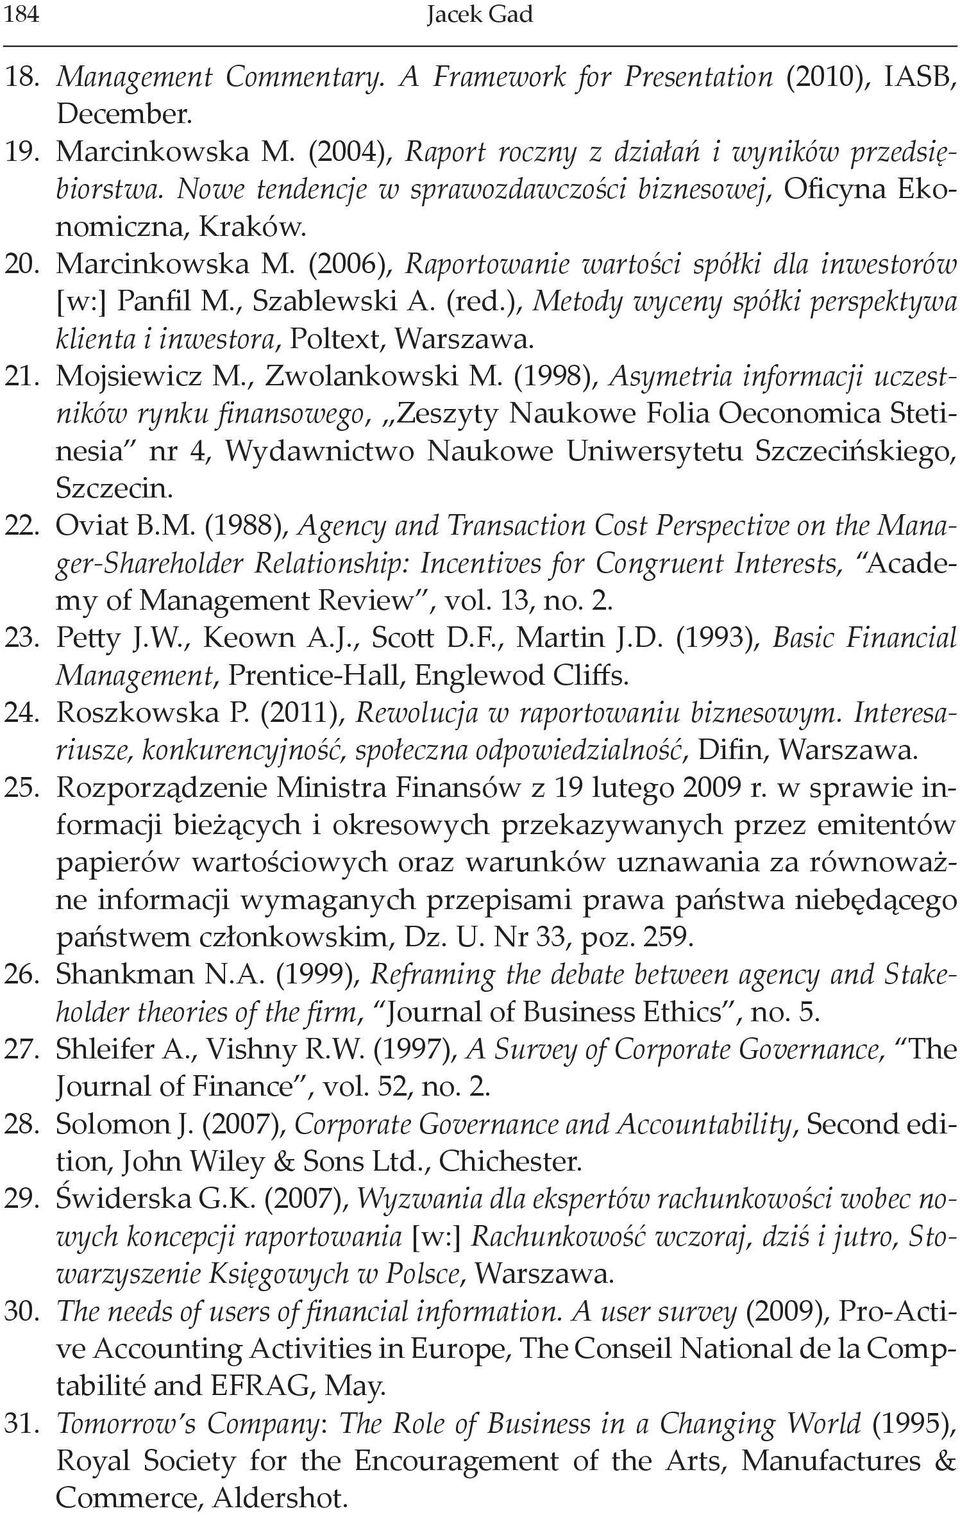 ), Metody wyceny spółki perspektywa klienta i inwestora, Poltext, Warszawa. 21. Mojsiewicz M., Zwolankowski M.